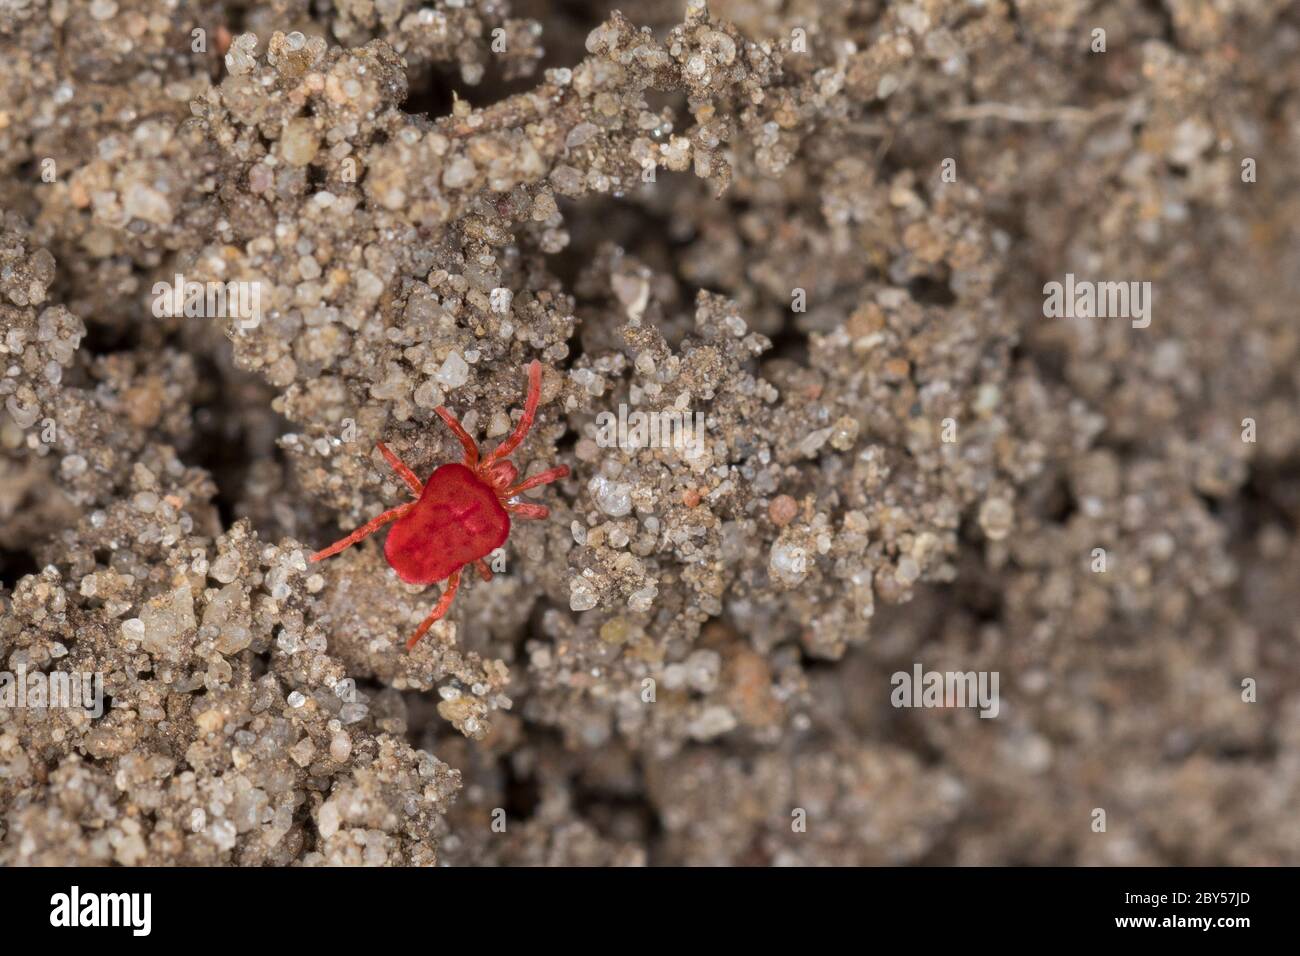 Velvet mite, Red mite, Velvet mites (Trombidium spec., Trombidium cf. holosericeum), on the ground, Germany Stock Photo